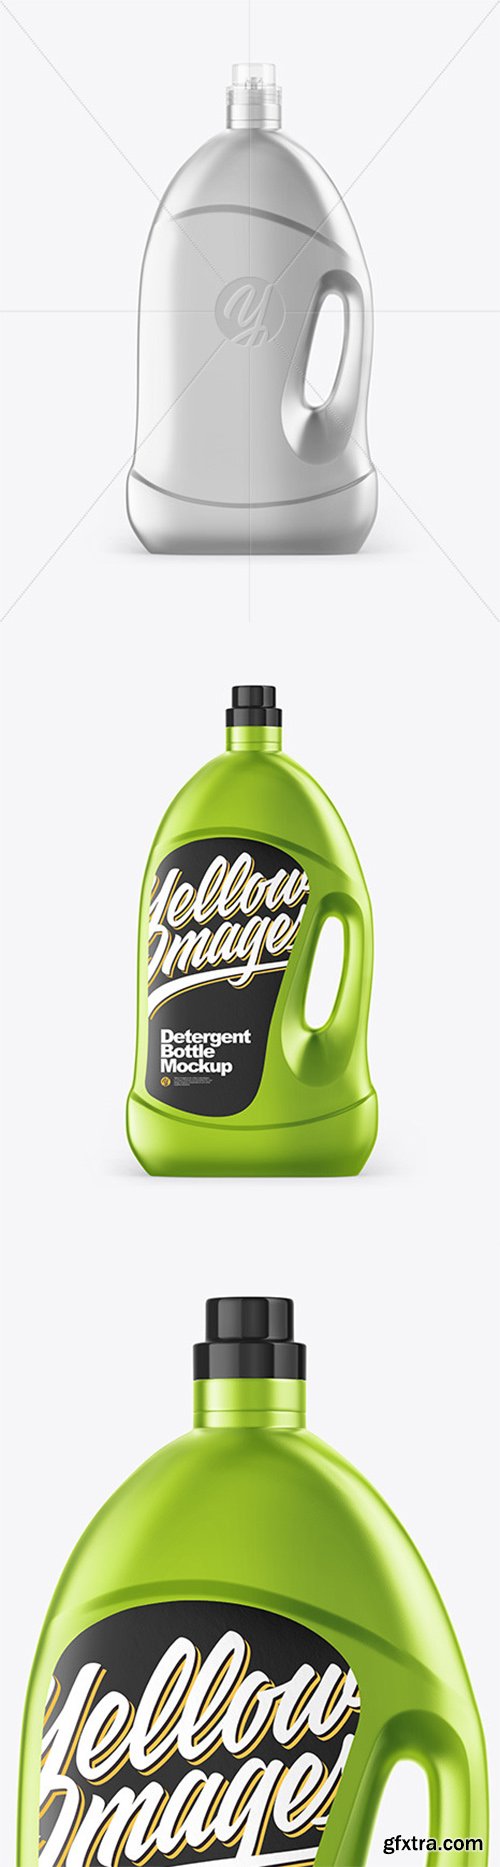 Metallic Detergent Bottle Mockup 64263